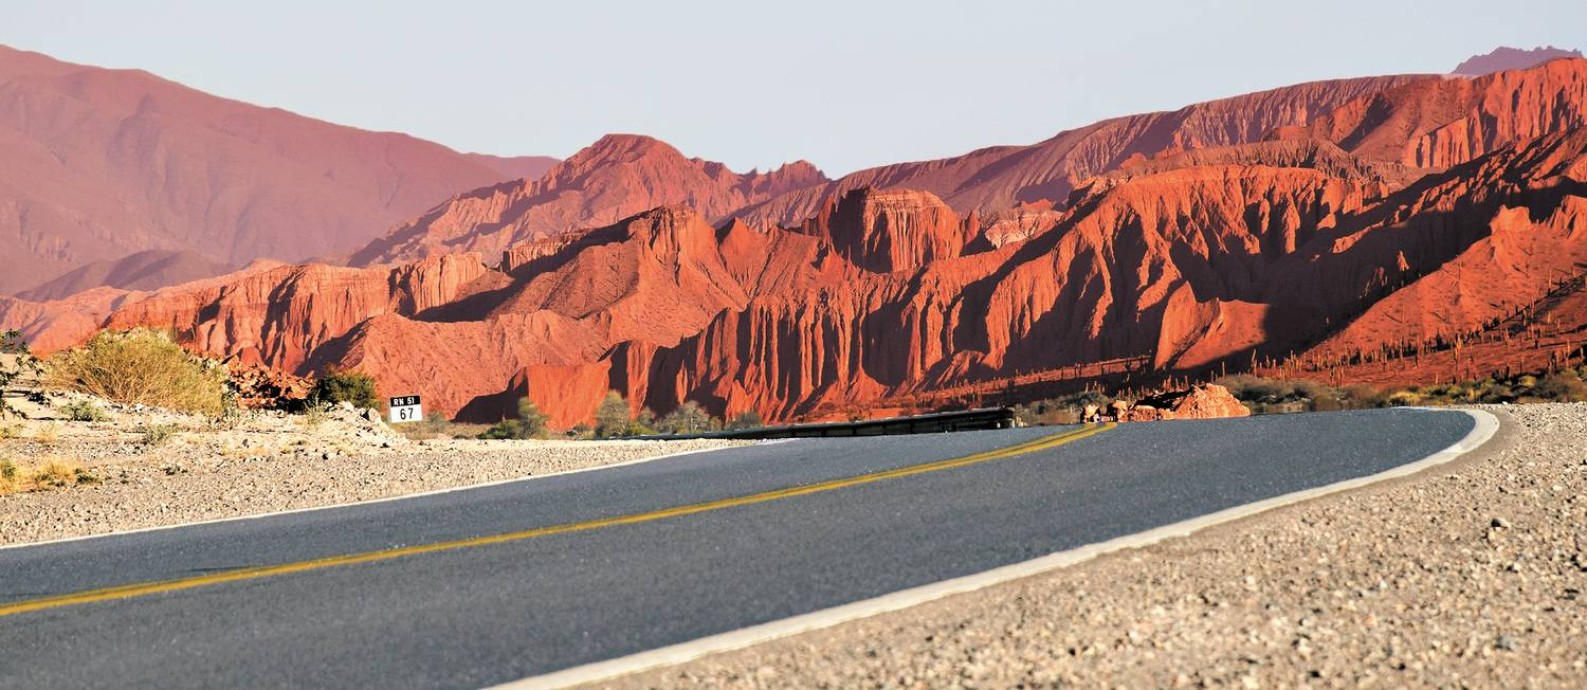 Paisagens desérticas e montanhas avermelhadas marcam o cenário nas estradas da provícia de Salta, na Argentina Foto: Janaína Figueiredo / O Globo